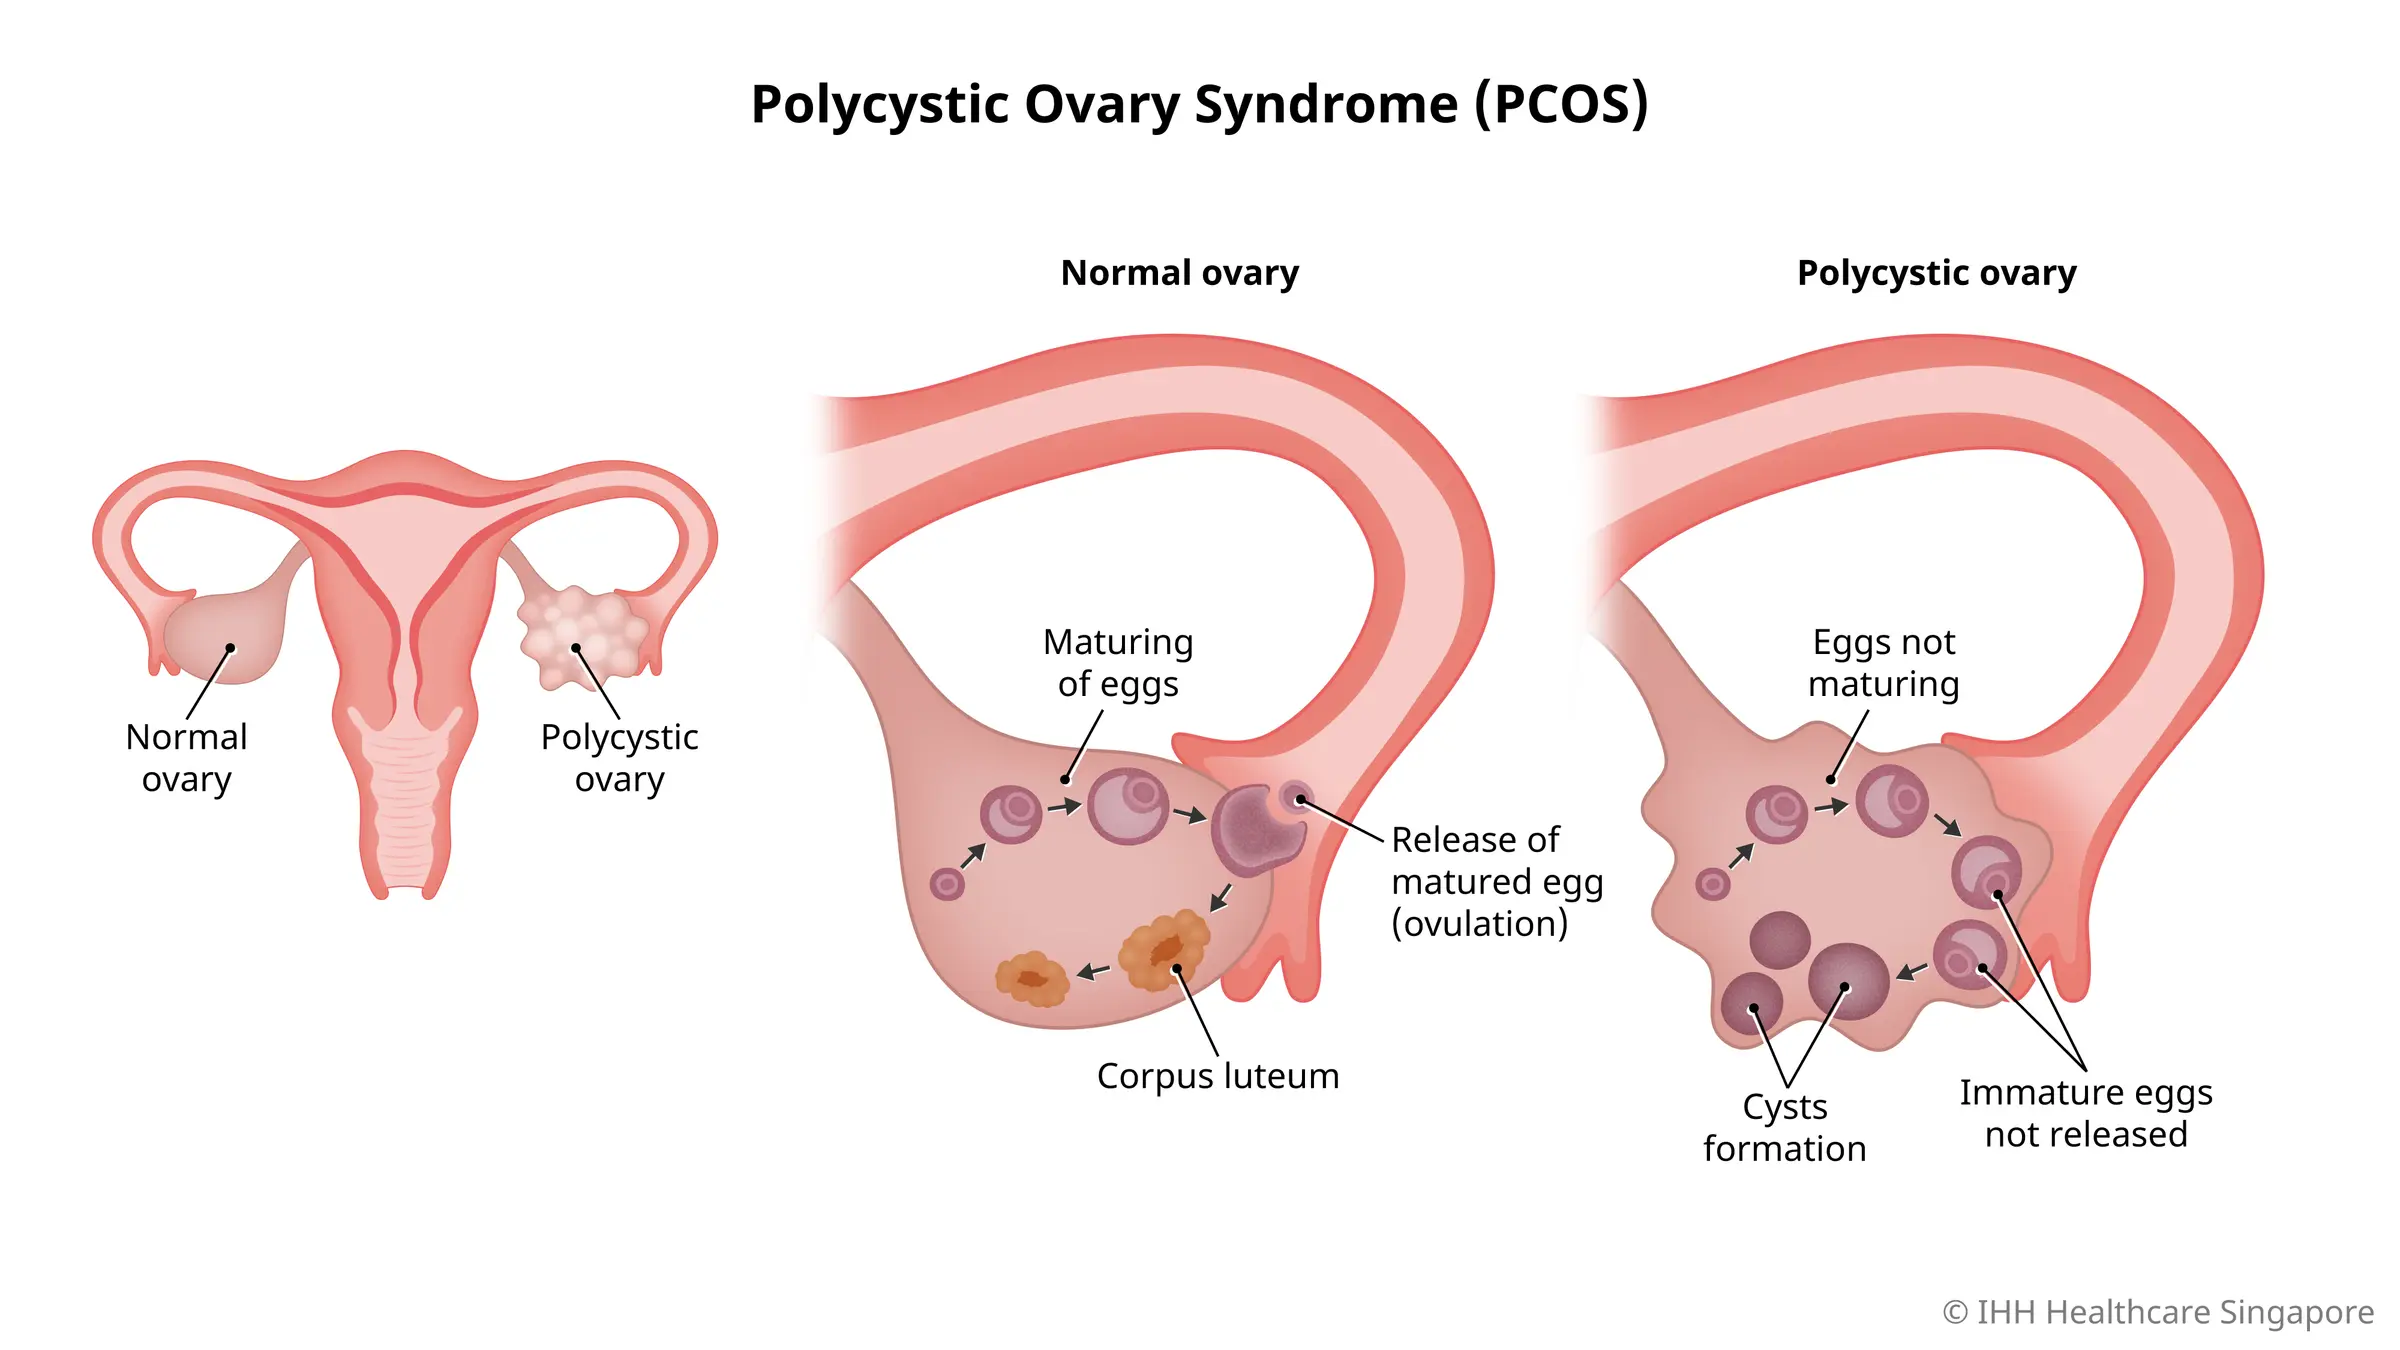 多囊卵巢综合征 (PCOS) 是一种常见的激素紊乱疾病，可导致女性卵巢中形成小囊肿。